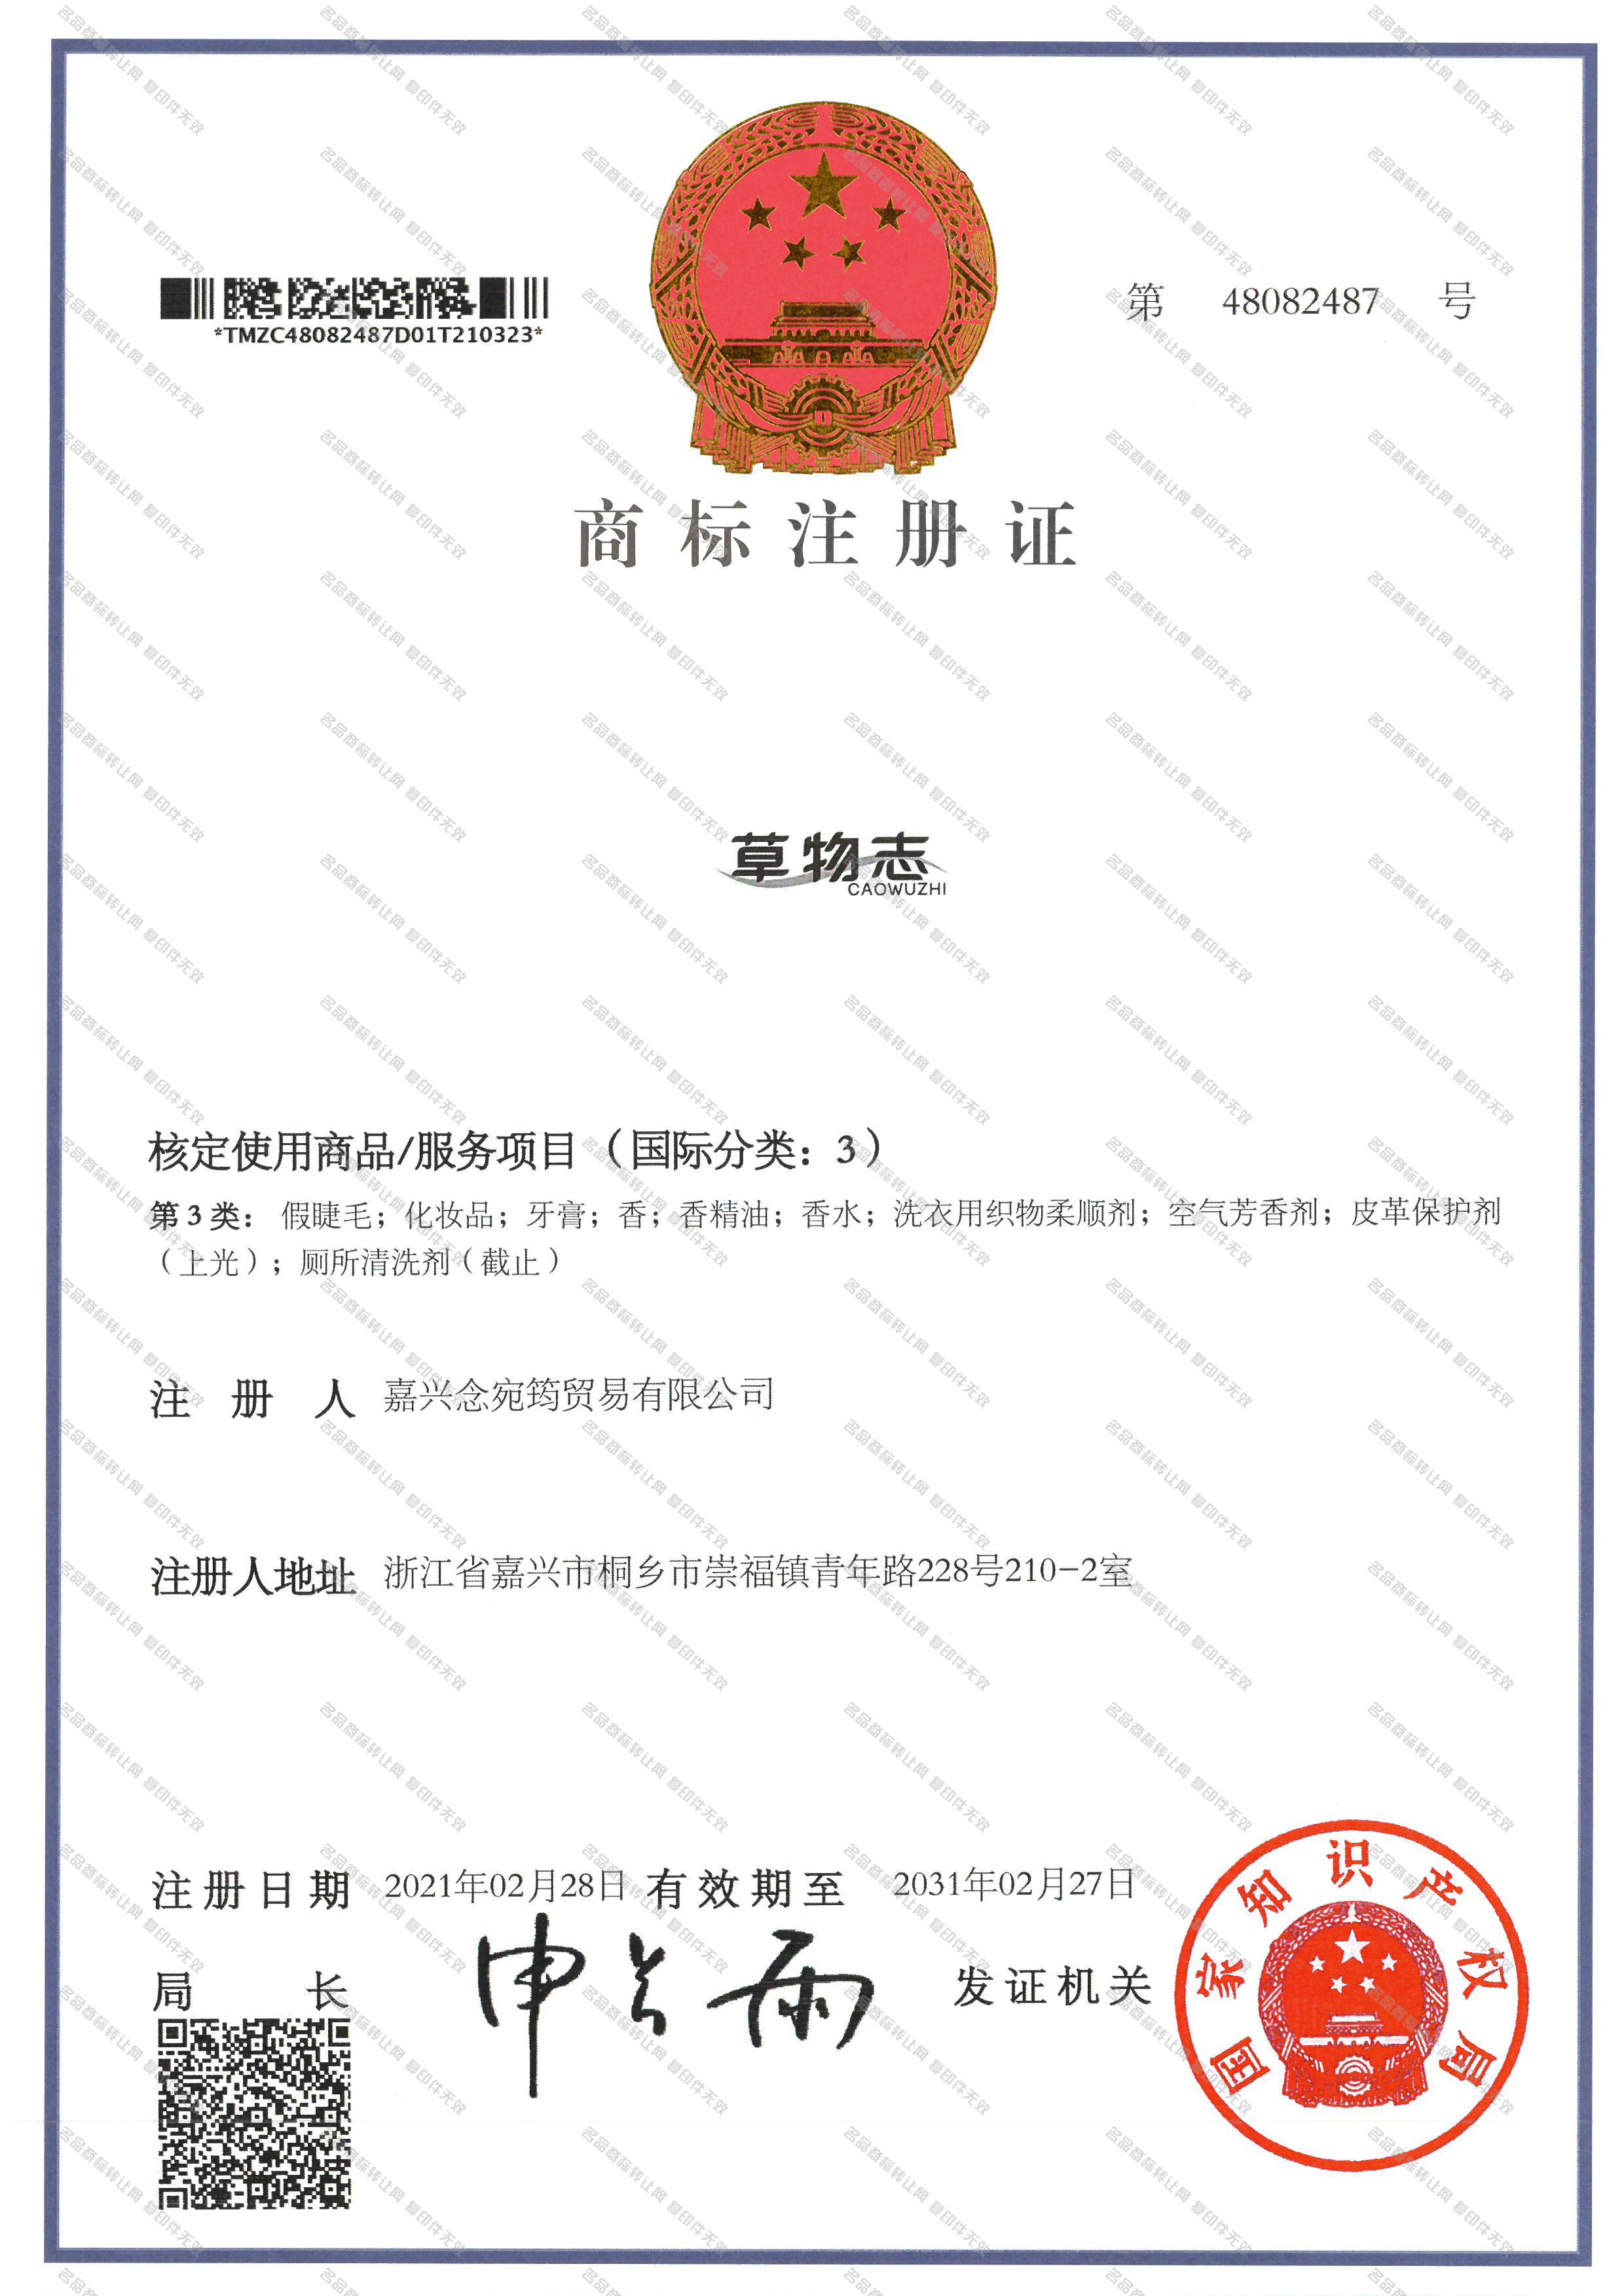 草物志;CAOWUZHI注册证